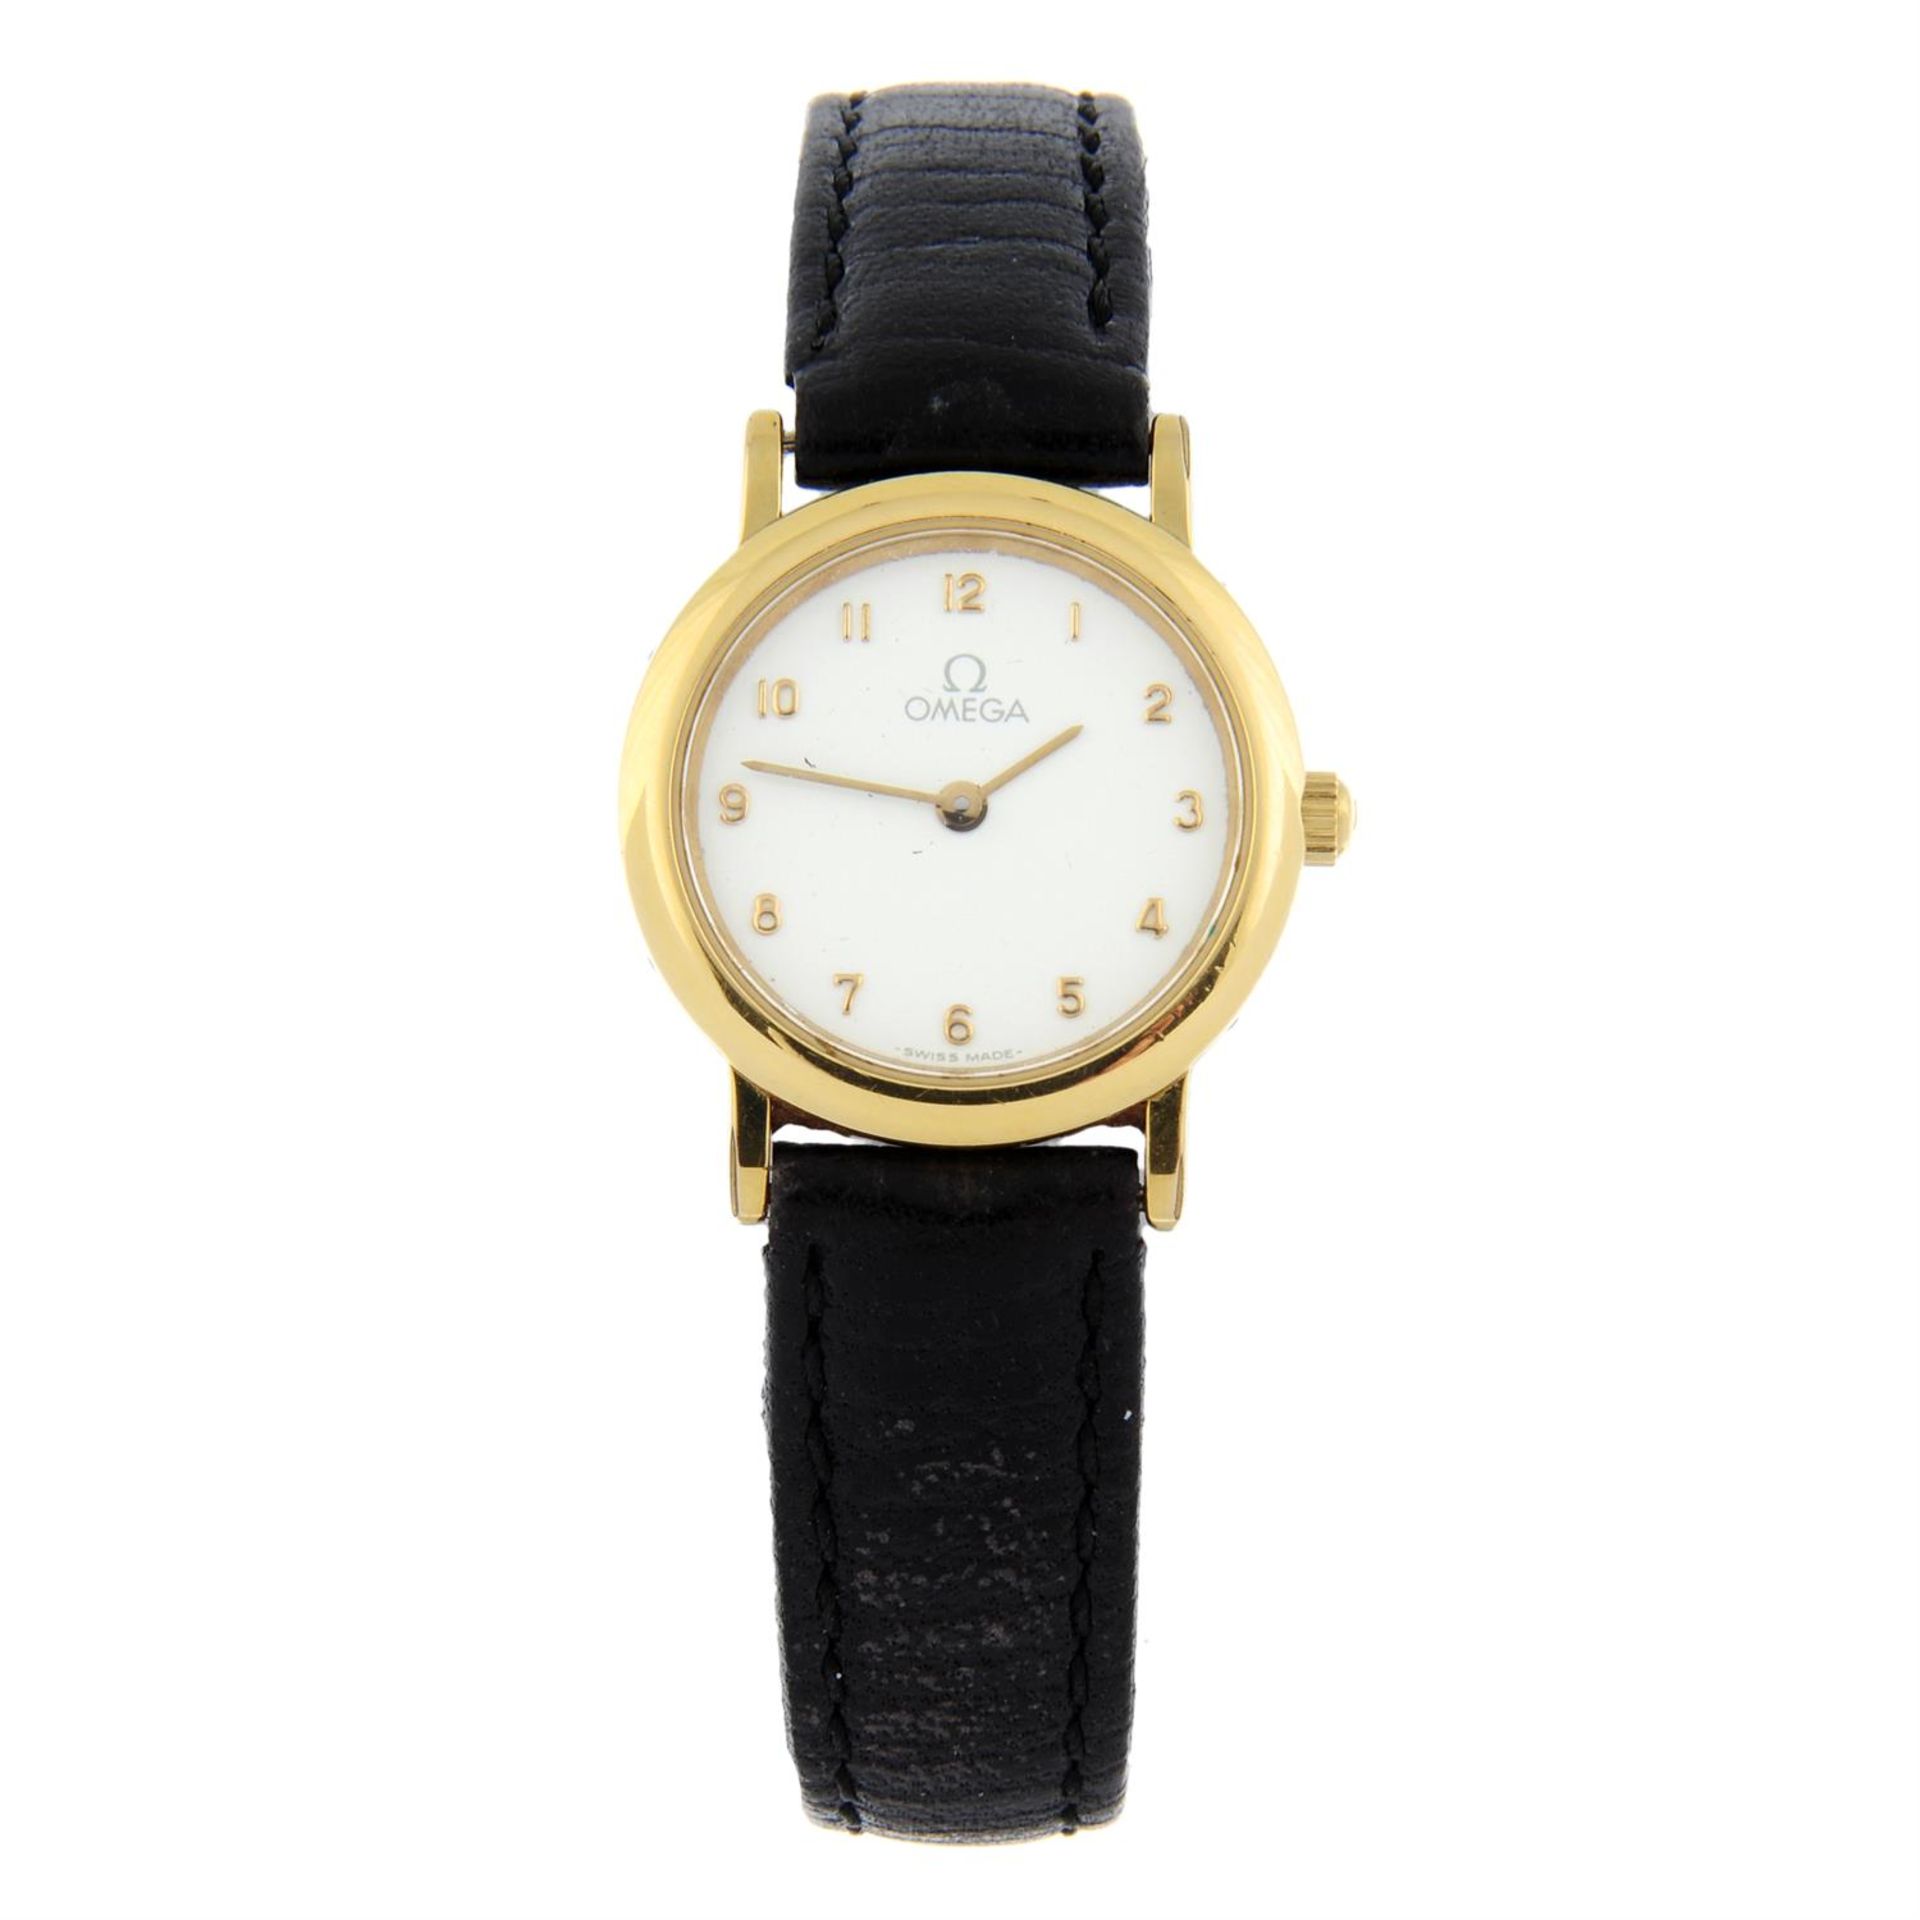 OMEGA - a gold plated De Ville wrist watch, 22mm.